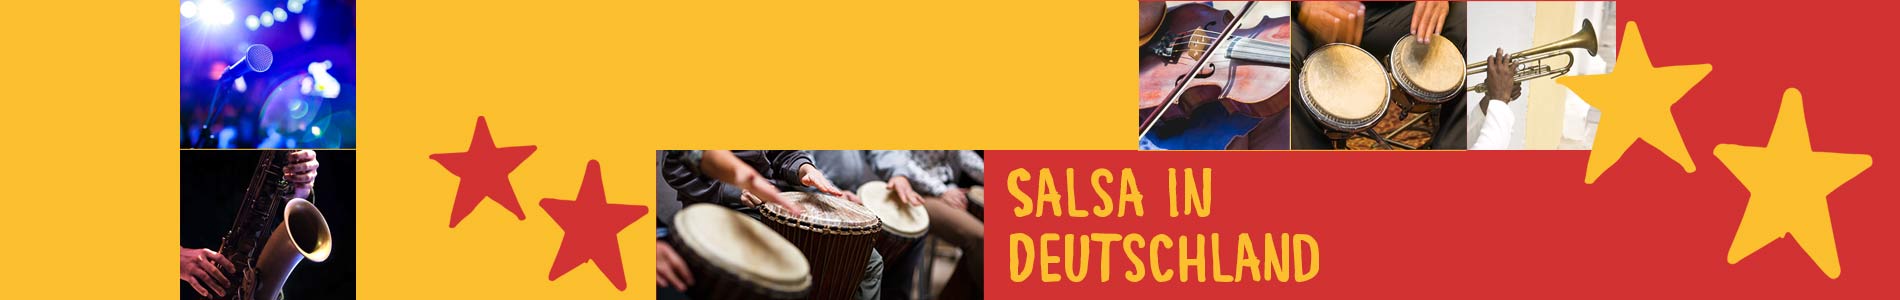 Salsa in Bromskirchen – Salsa lernen und tanzen, Tanzkurse, Partys, Veranstaltungen